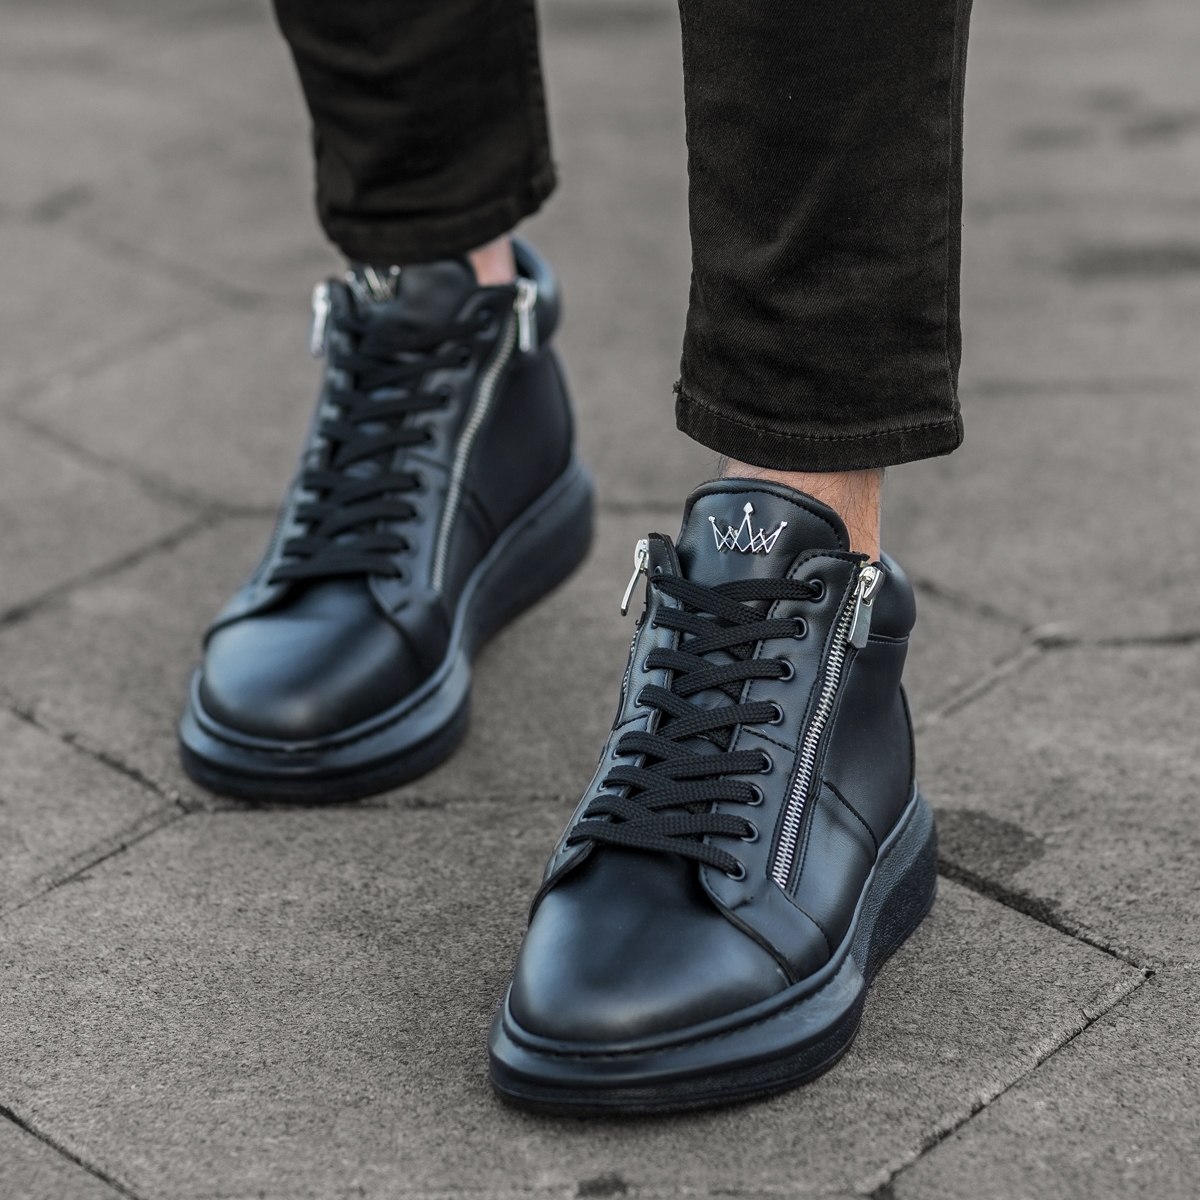 Herren High Top Sneakers Designer Schuhe mit Reissverschluss in schwarz - 3